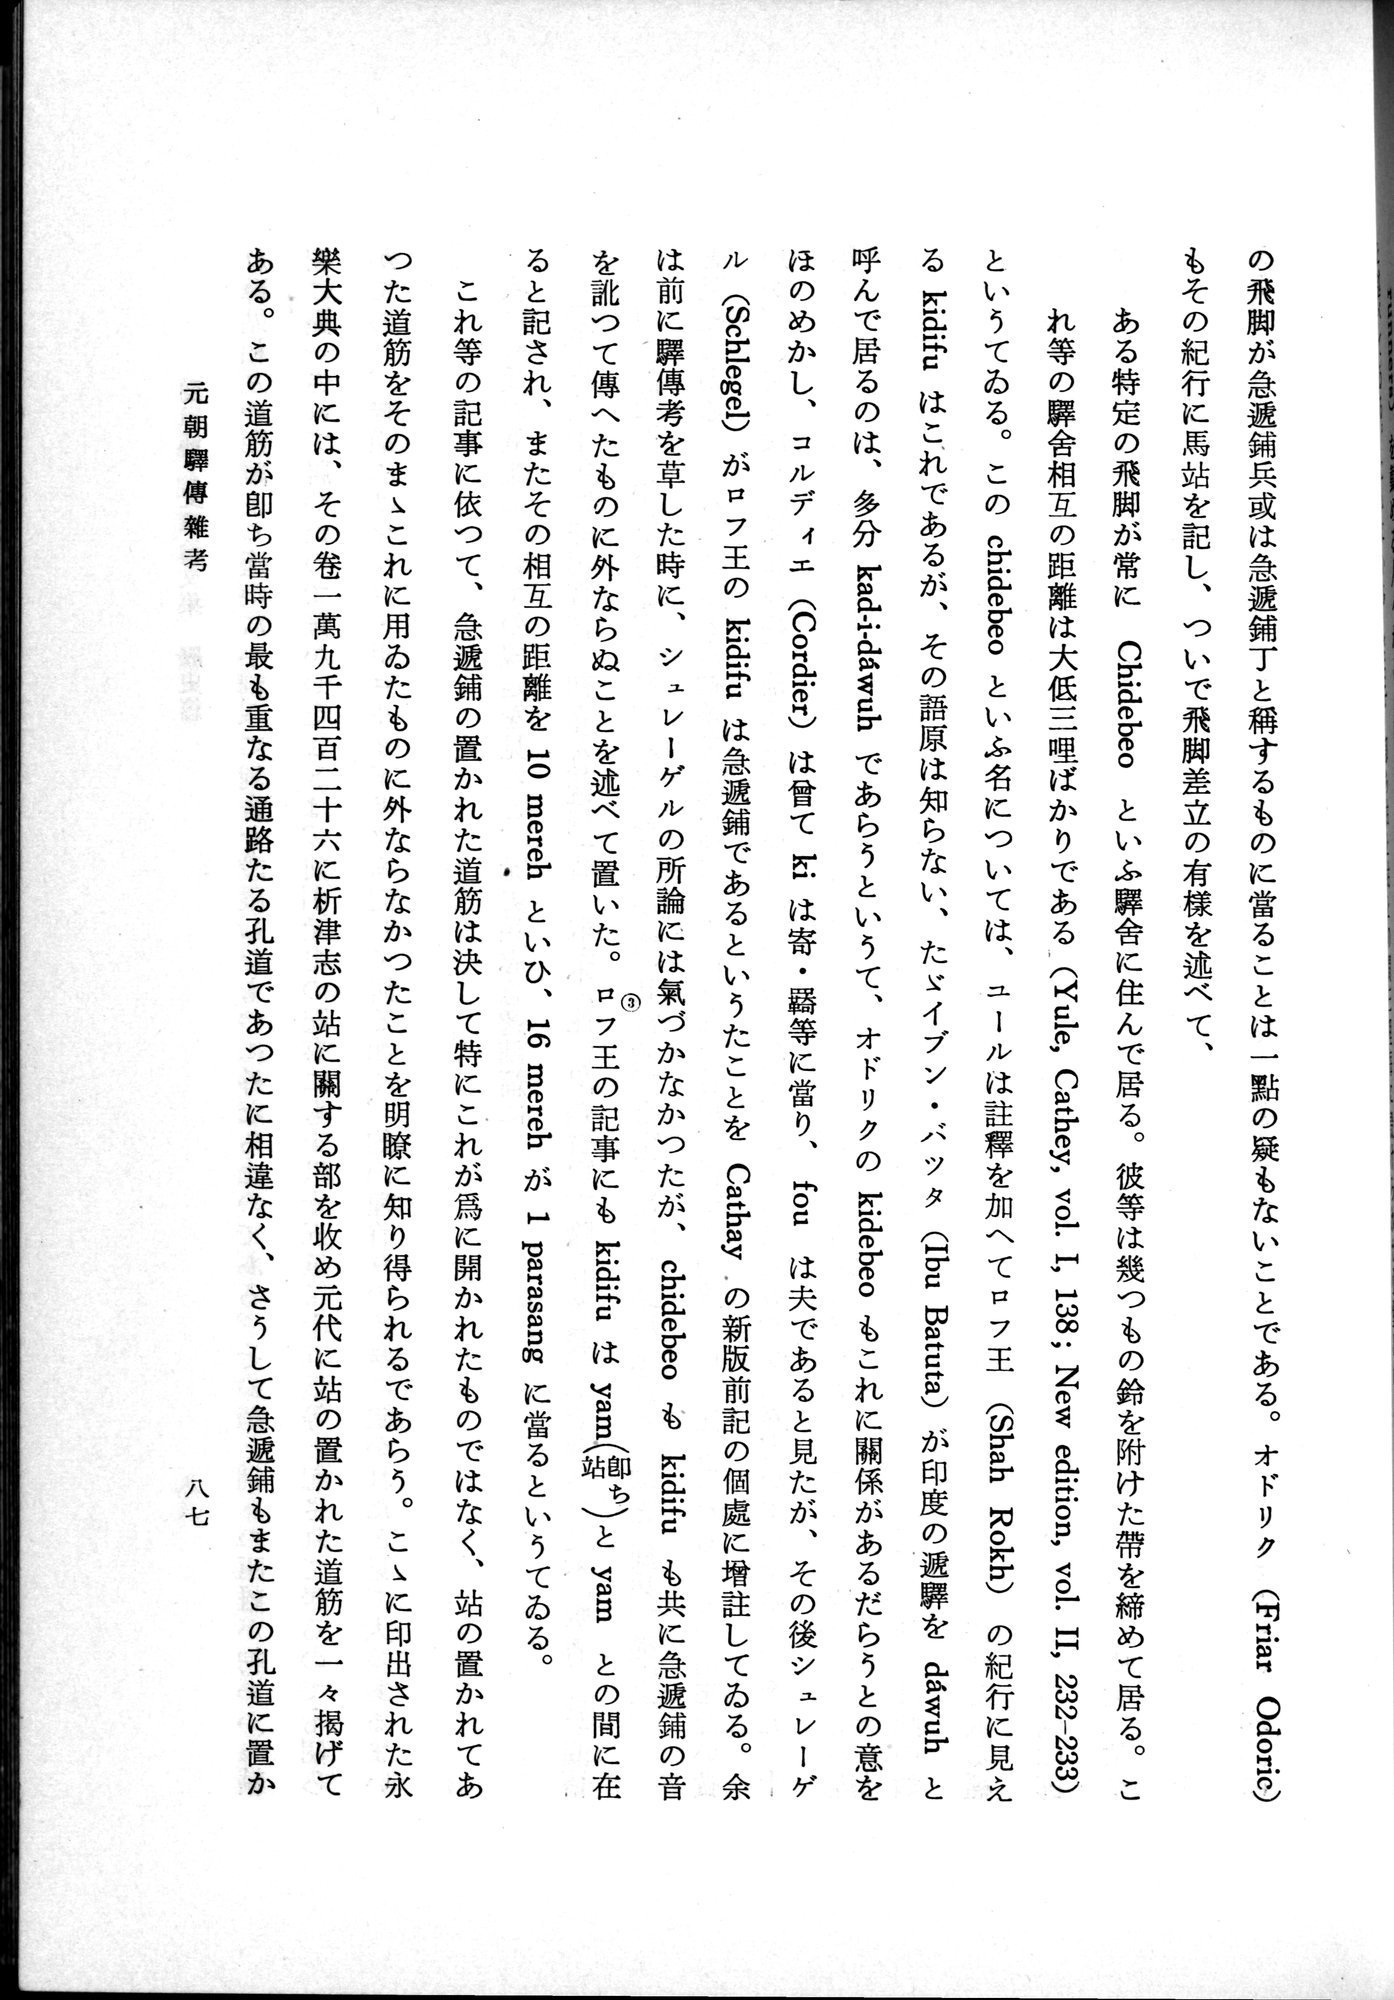 羽田博士史学論文集 : vol.1 / Page 125 (Grayscale High Resolution Image)